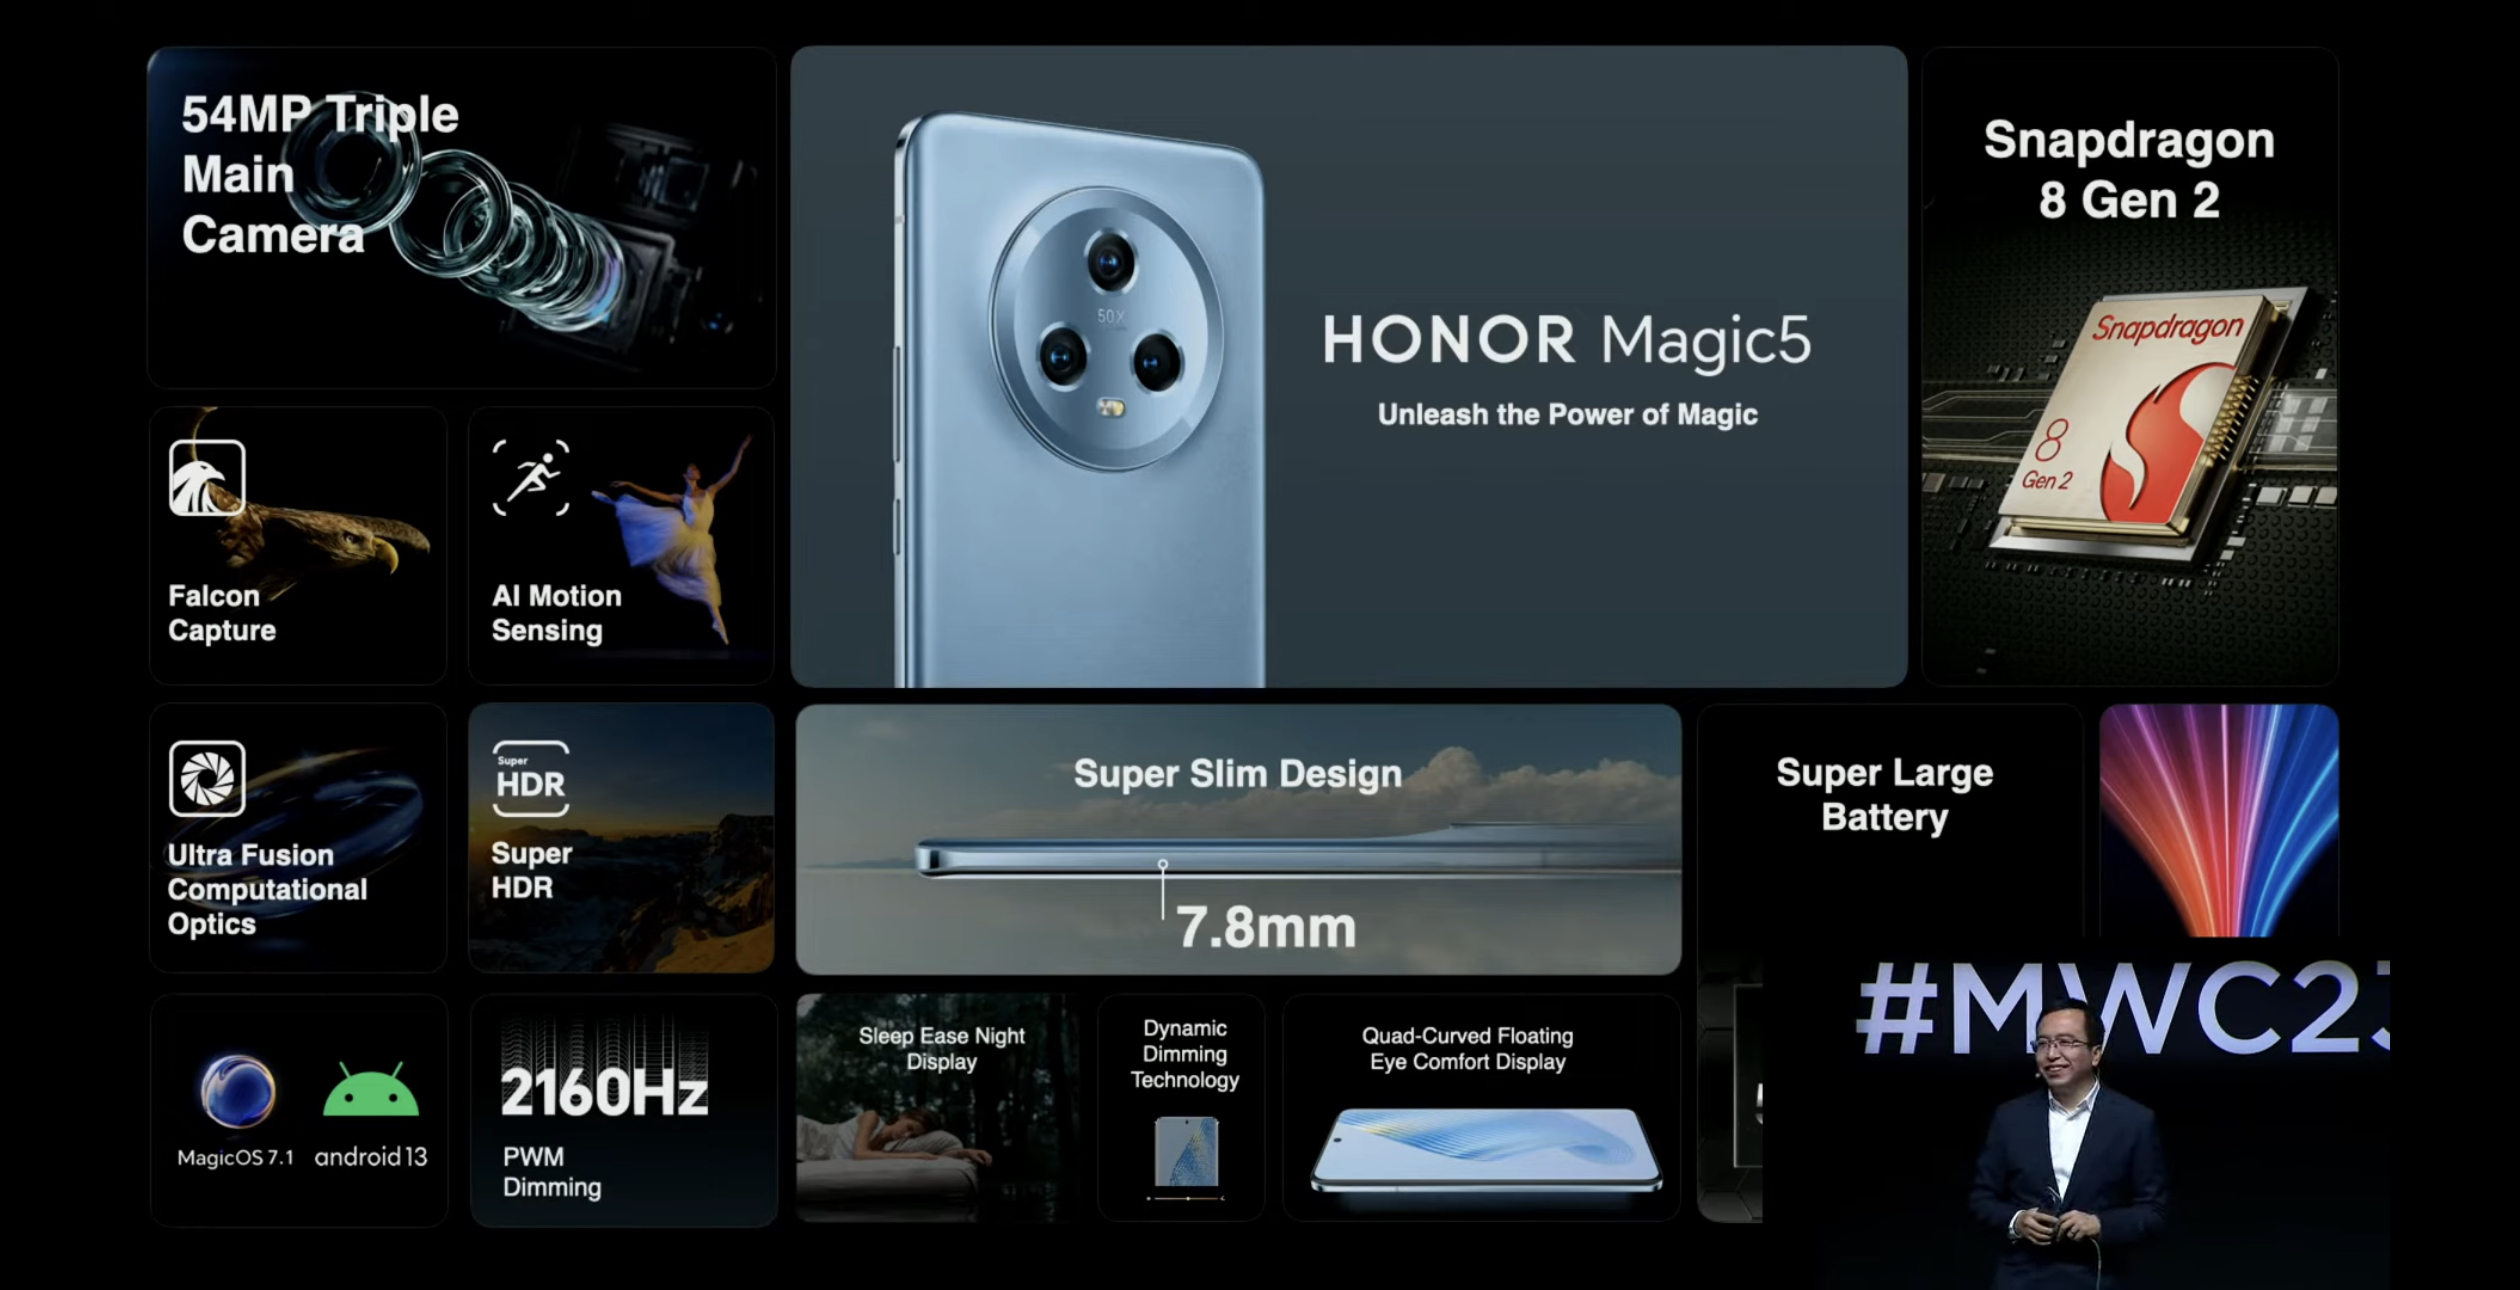 Honor Magic5 turut dilancarkan dengan cip Snapdragon 8 Gen 2 dan sistem tri-kamera 54MP 6